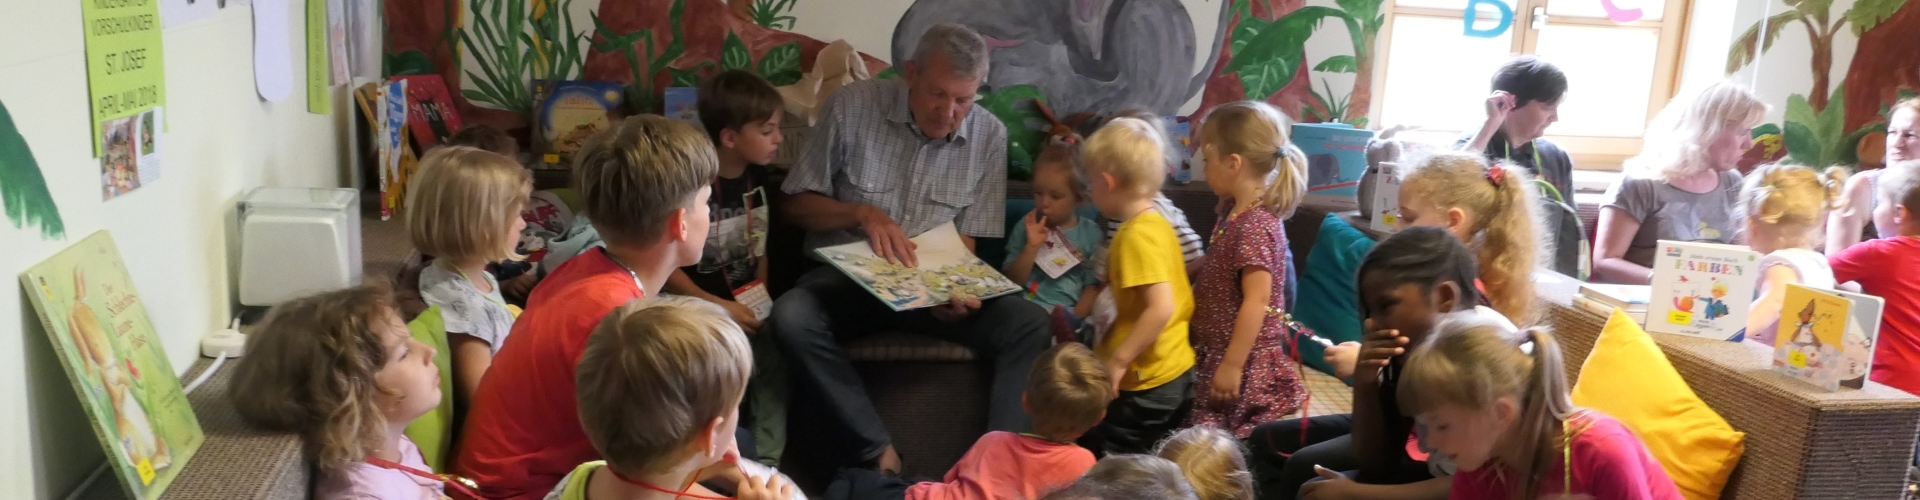 Kinder hören bei der Vorlese3viertelstunde in der Stadtbücherei Altötting aufmerksam dem vorlesenden Werner Sirringhaus zu.